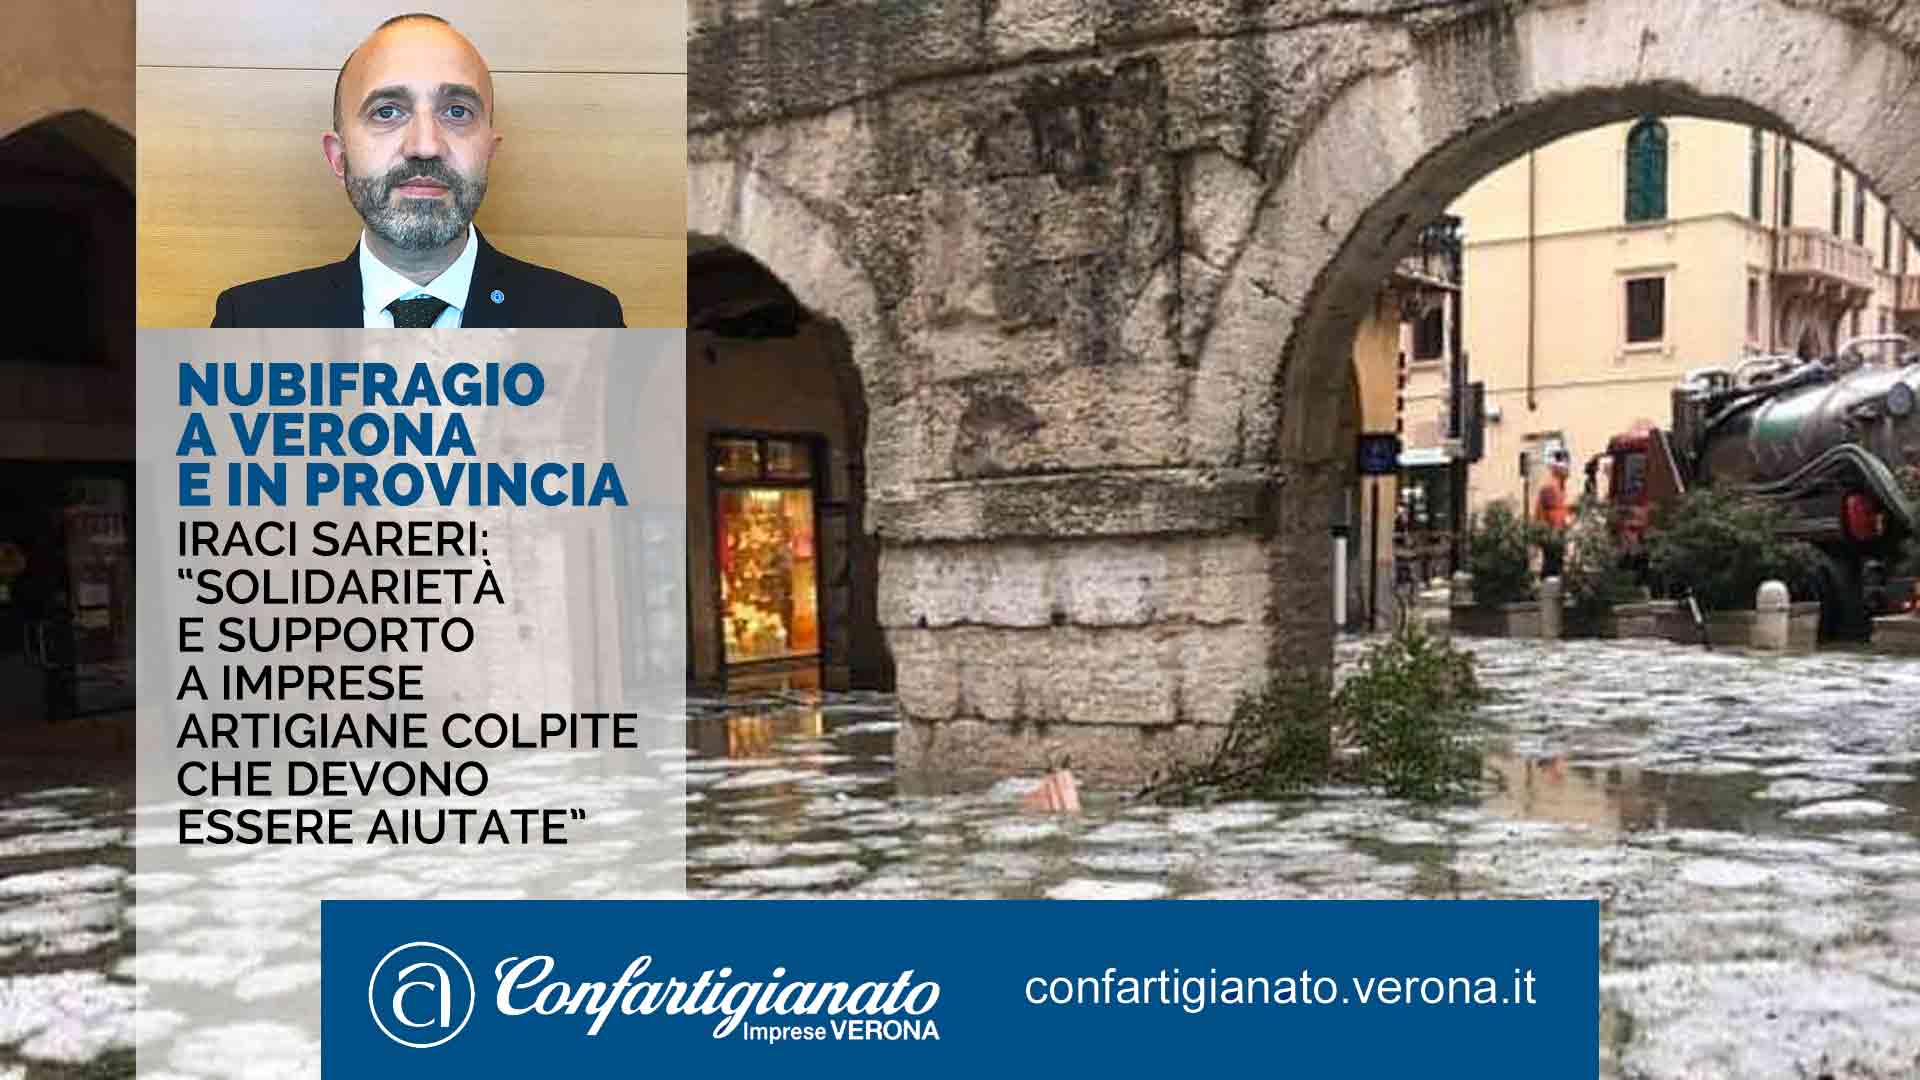 ATTUALITA' – Nubifragio a Verona e in provincia, Iraci Sareri: “Solidarietà e supporto a imprese artigiane colpite che devono essere aiutate”